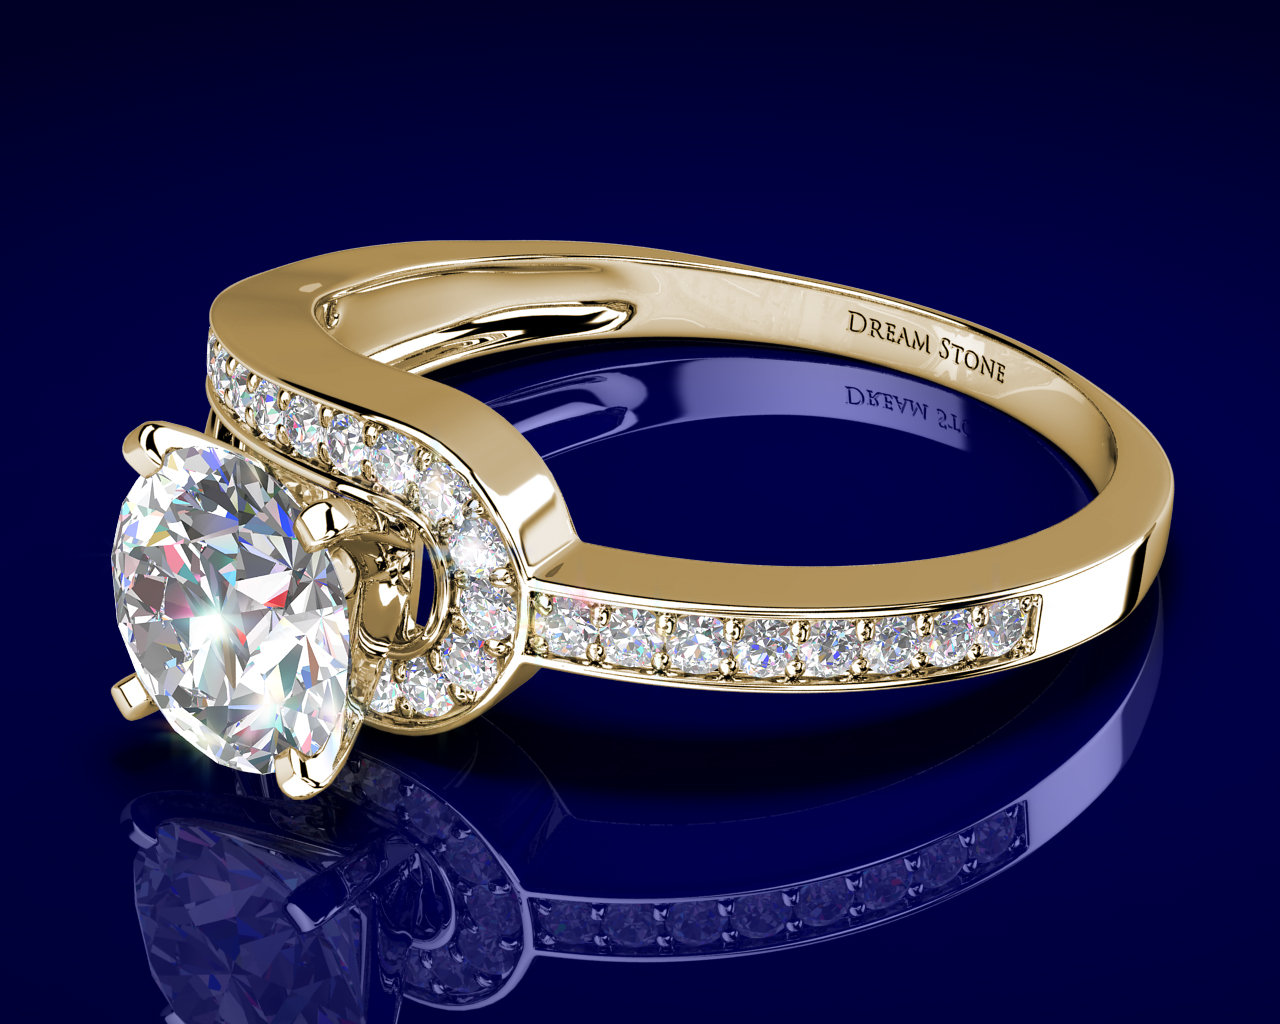 Diamond Ring image - Free stock photo - Public Domain photo - CC0 Images